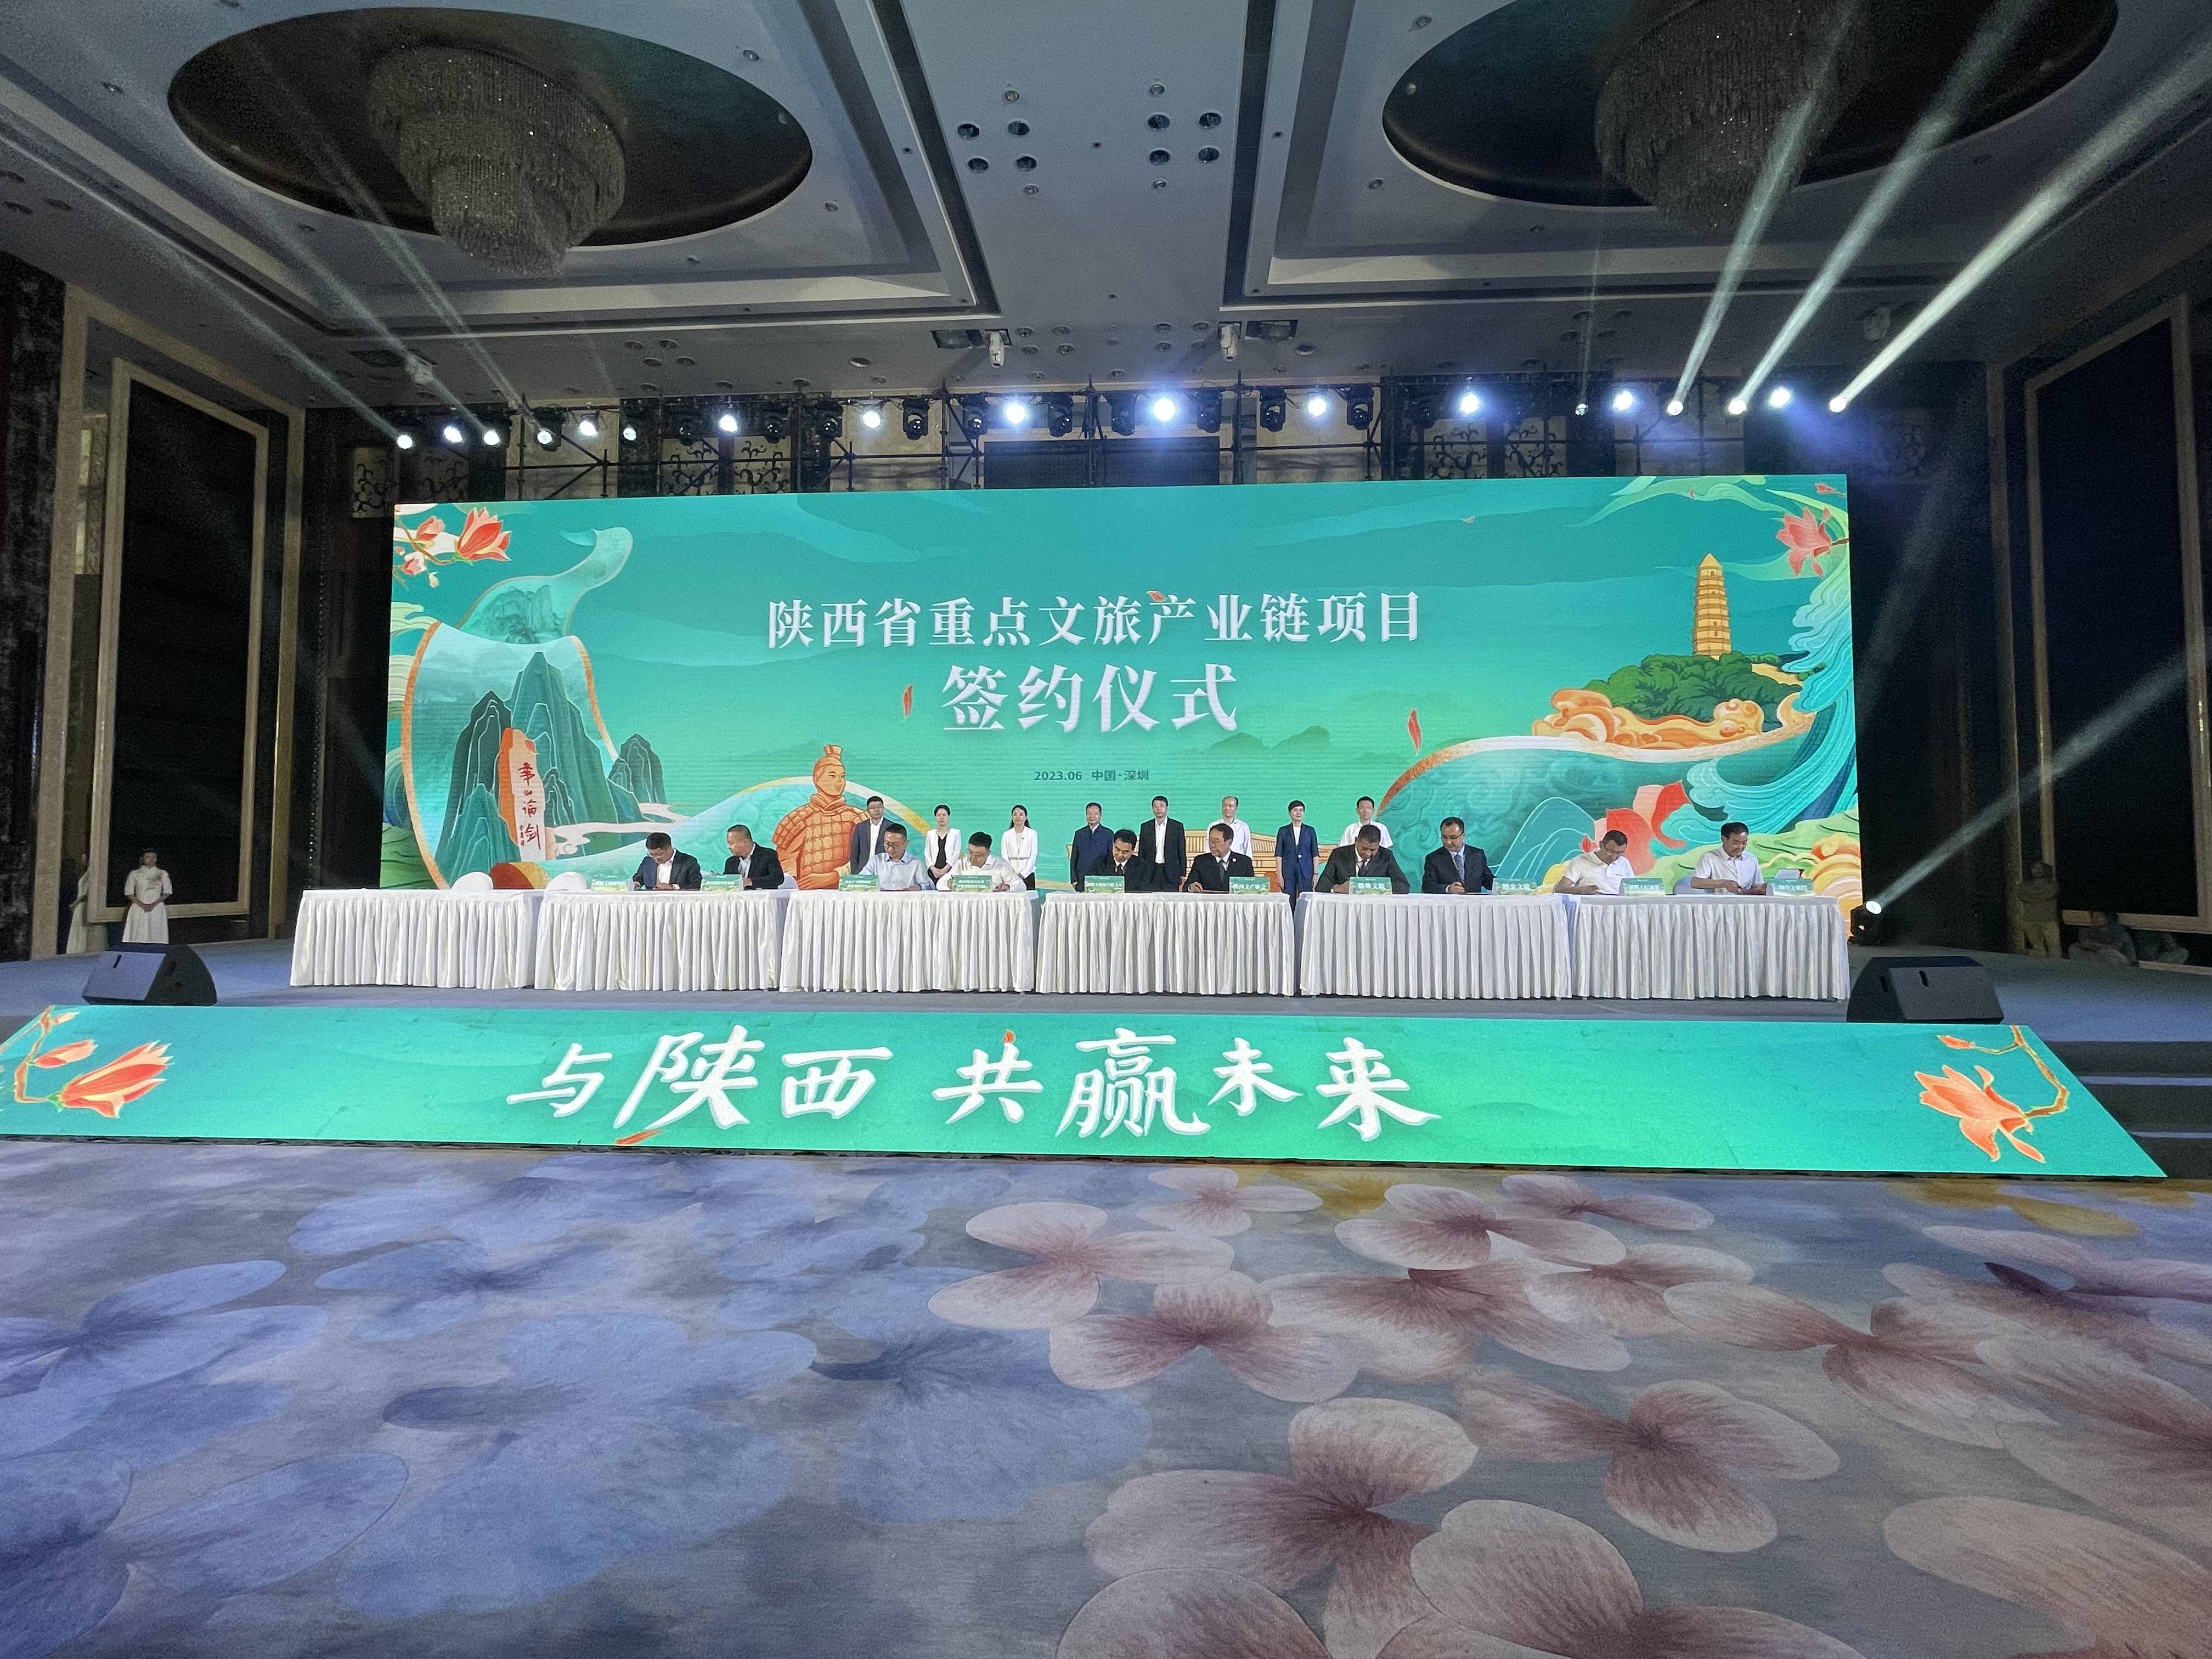 陕西省文化产业协会与深圳市文化创意与设计联合会签署《战略合作协议》